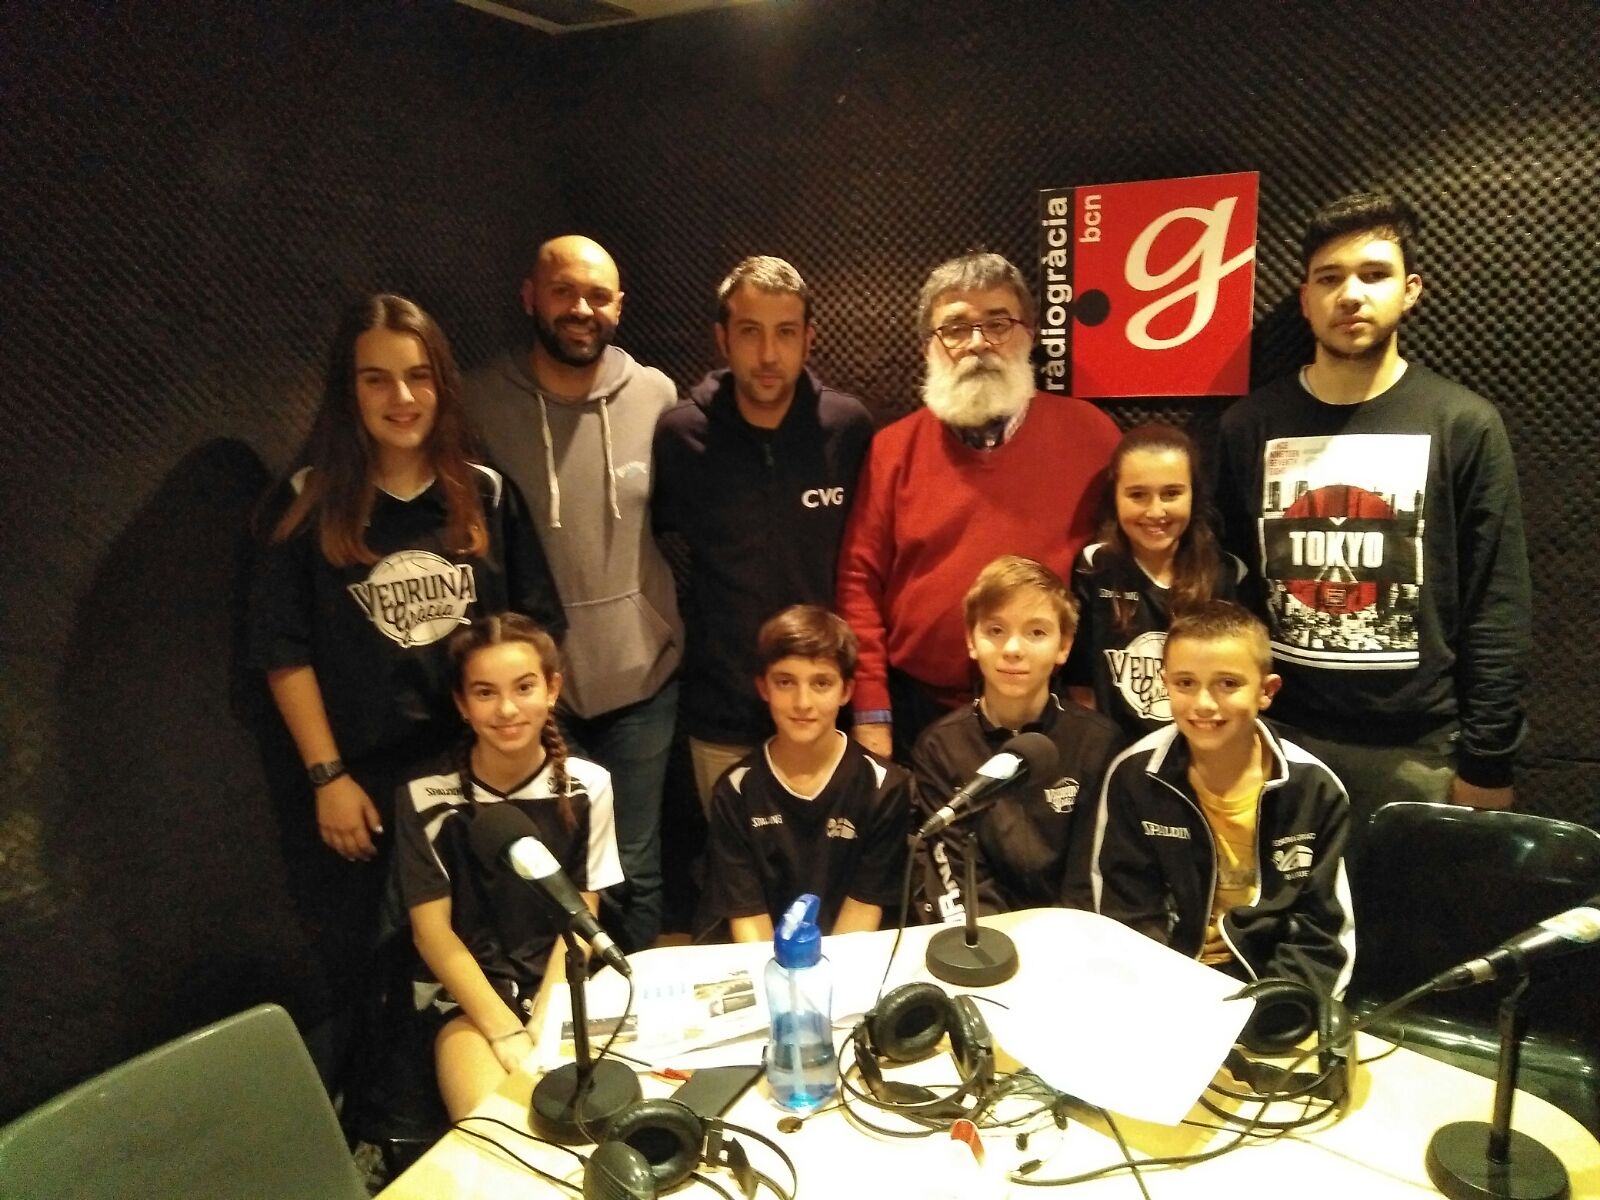 Bàsquet Vedruna visita Ràdio - Gràcia